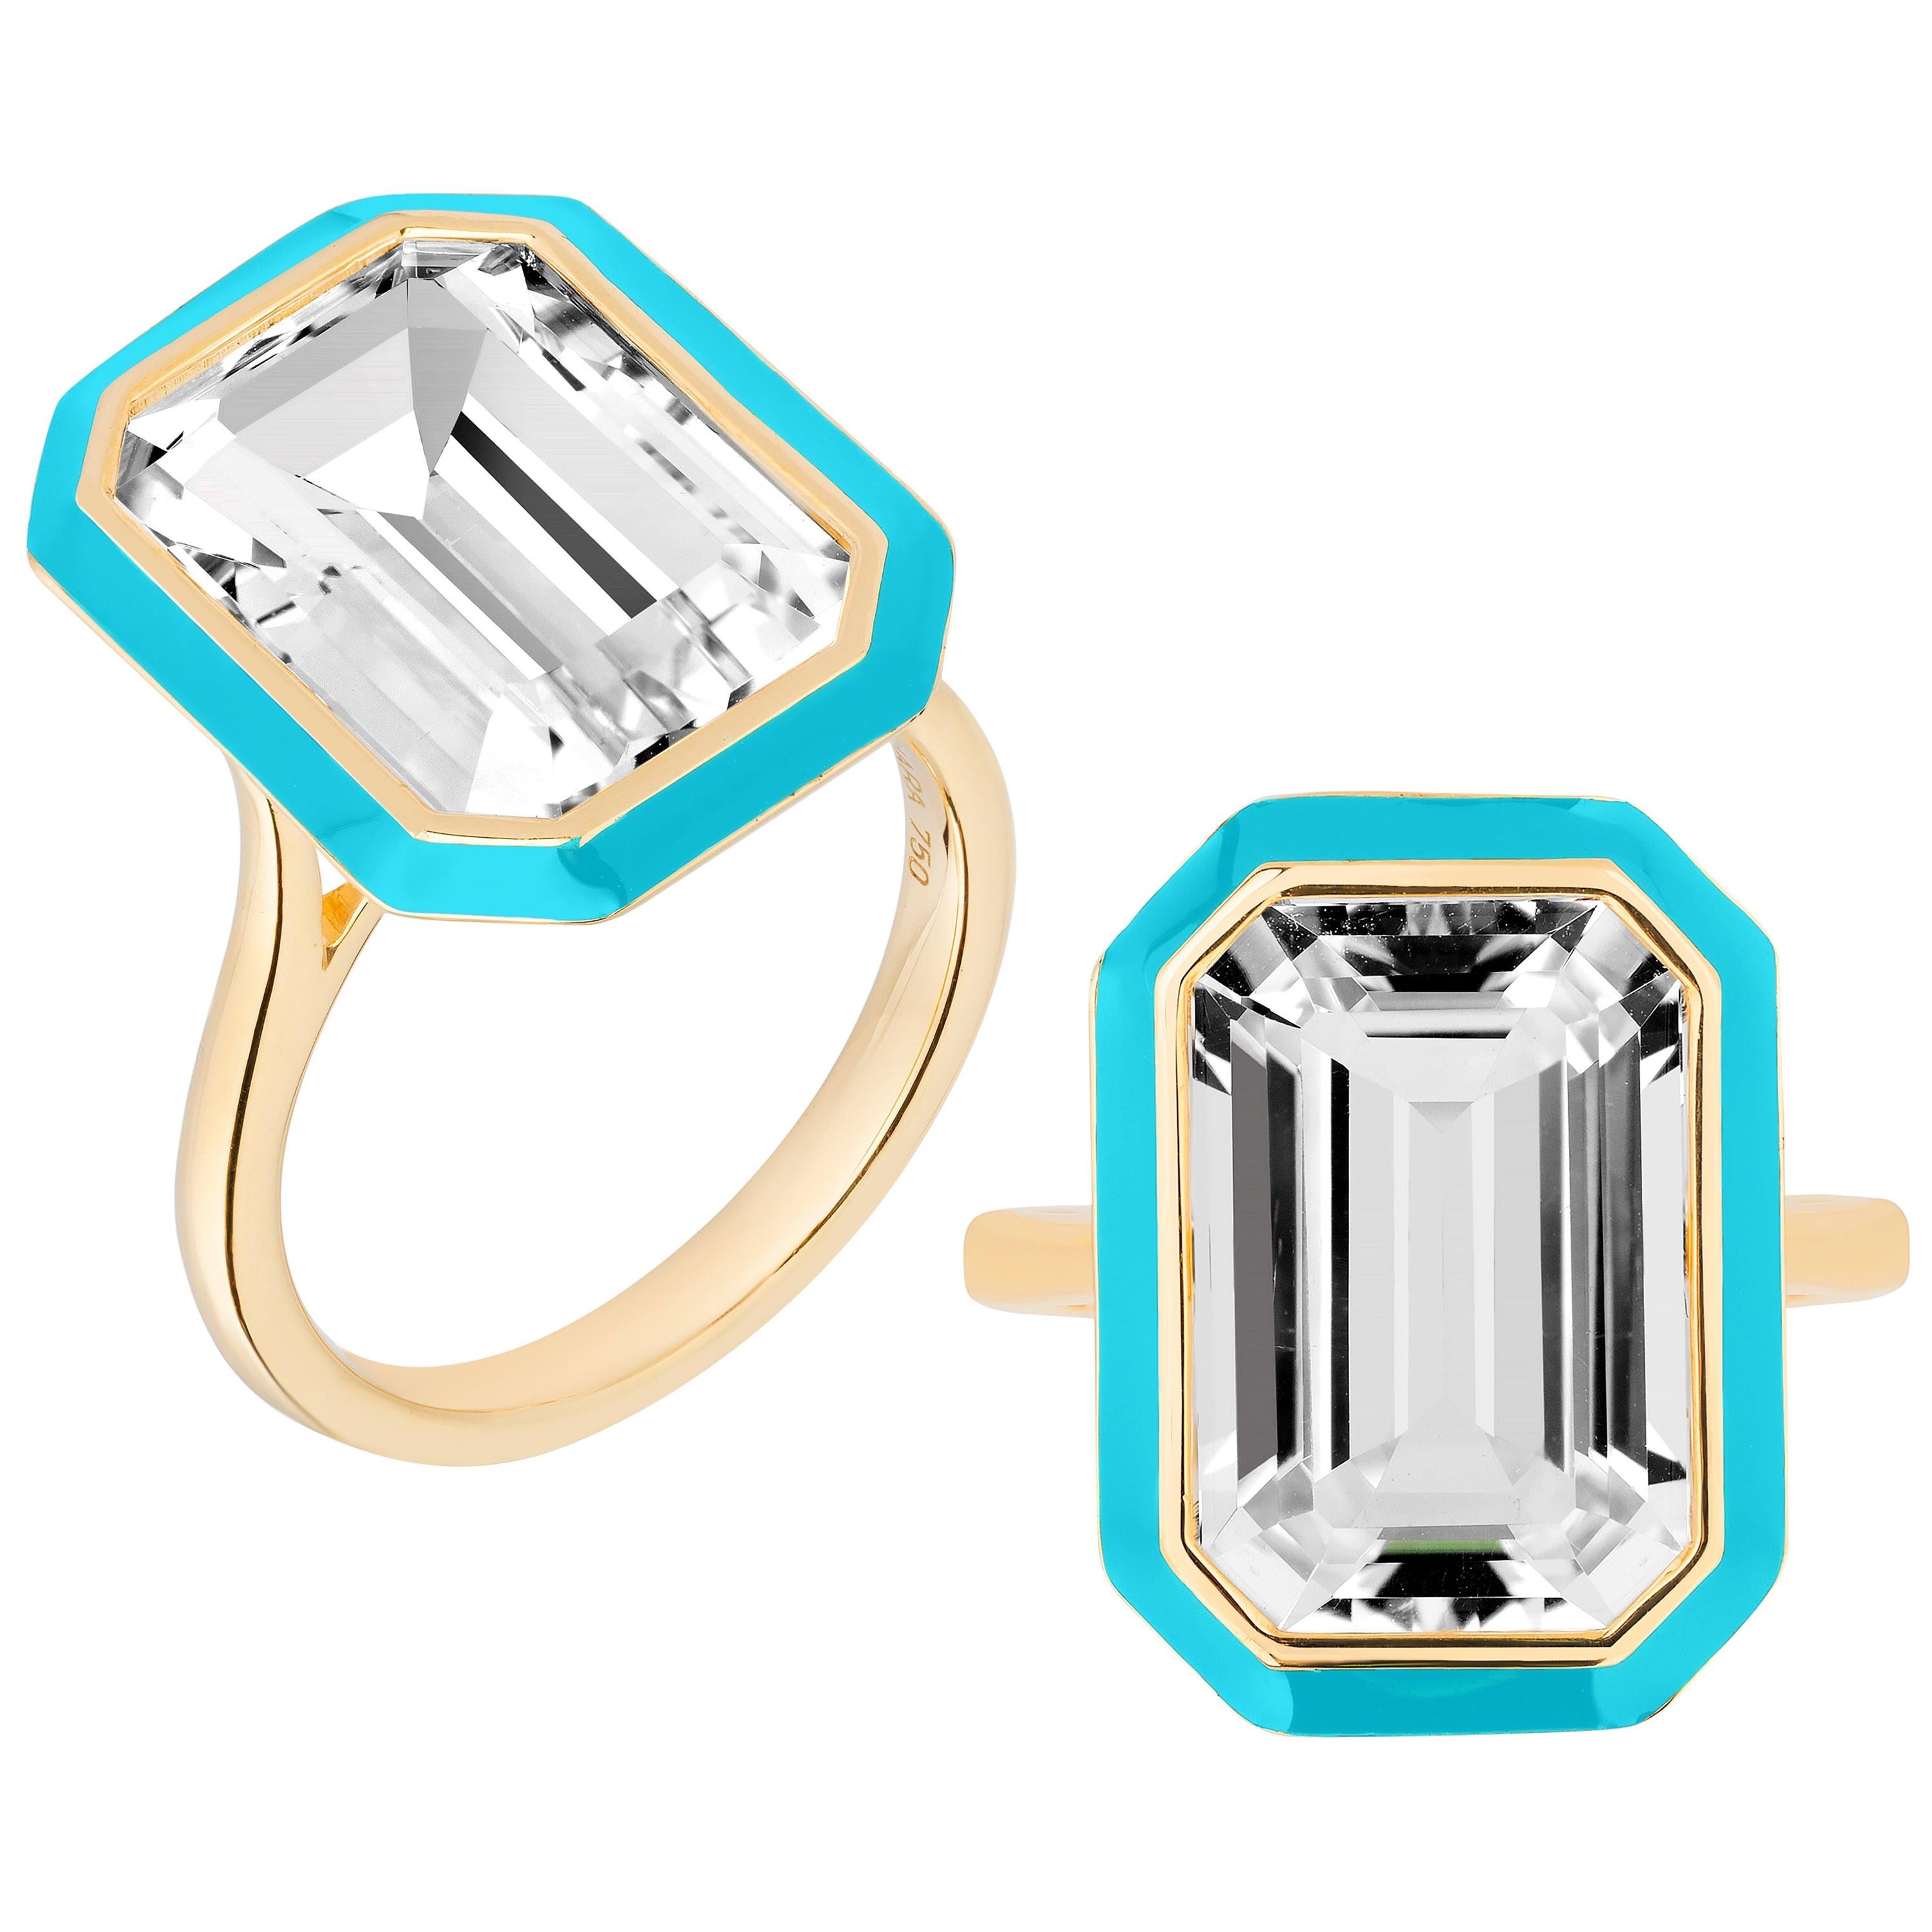 Goshwara Rock Crystal Emerald Cut in a Bezel Setting Ring .